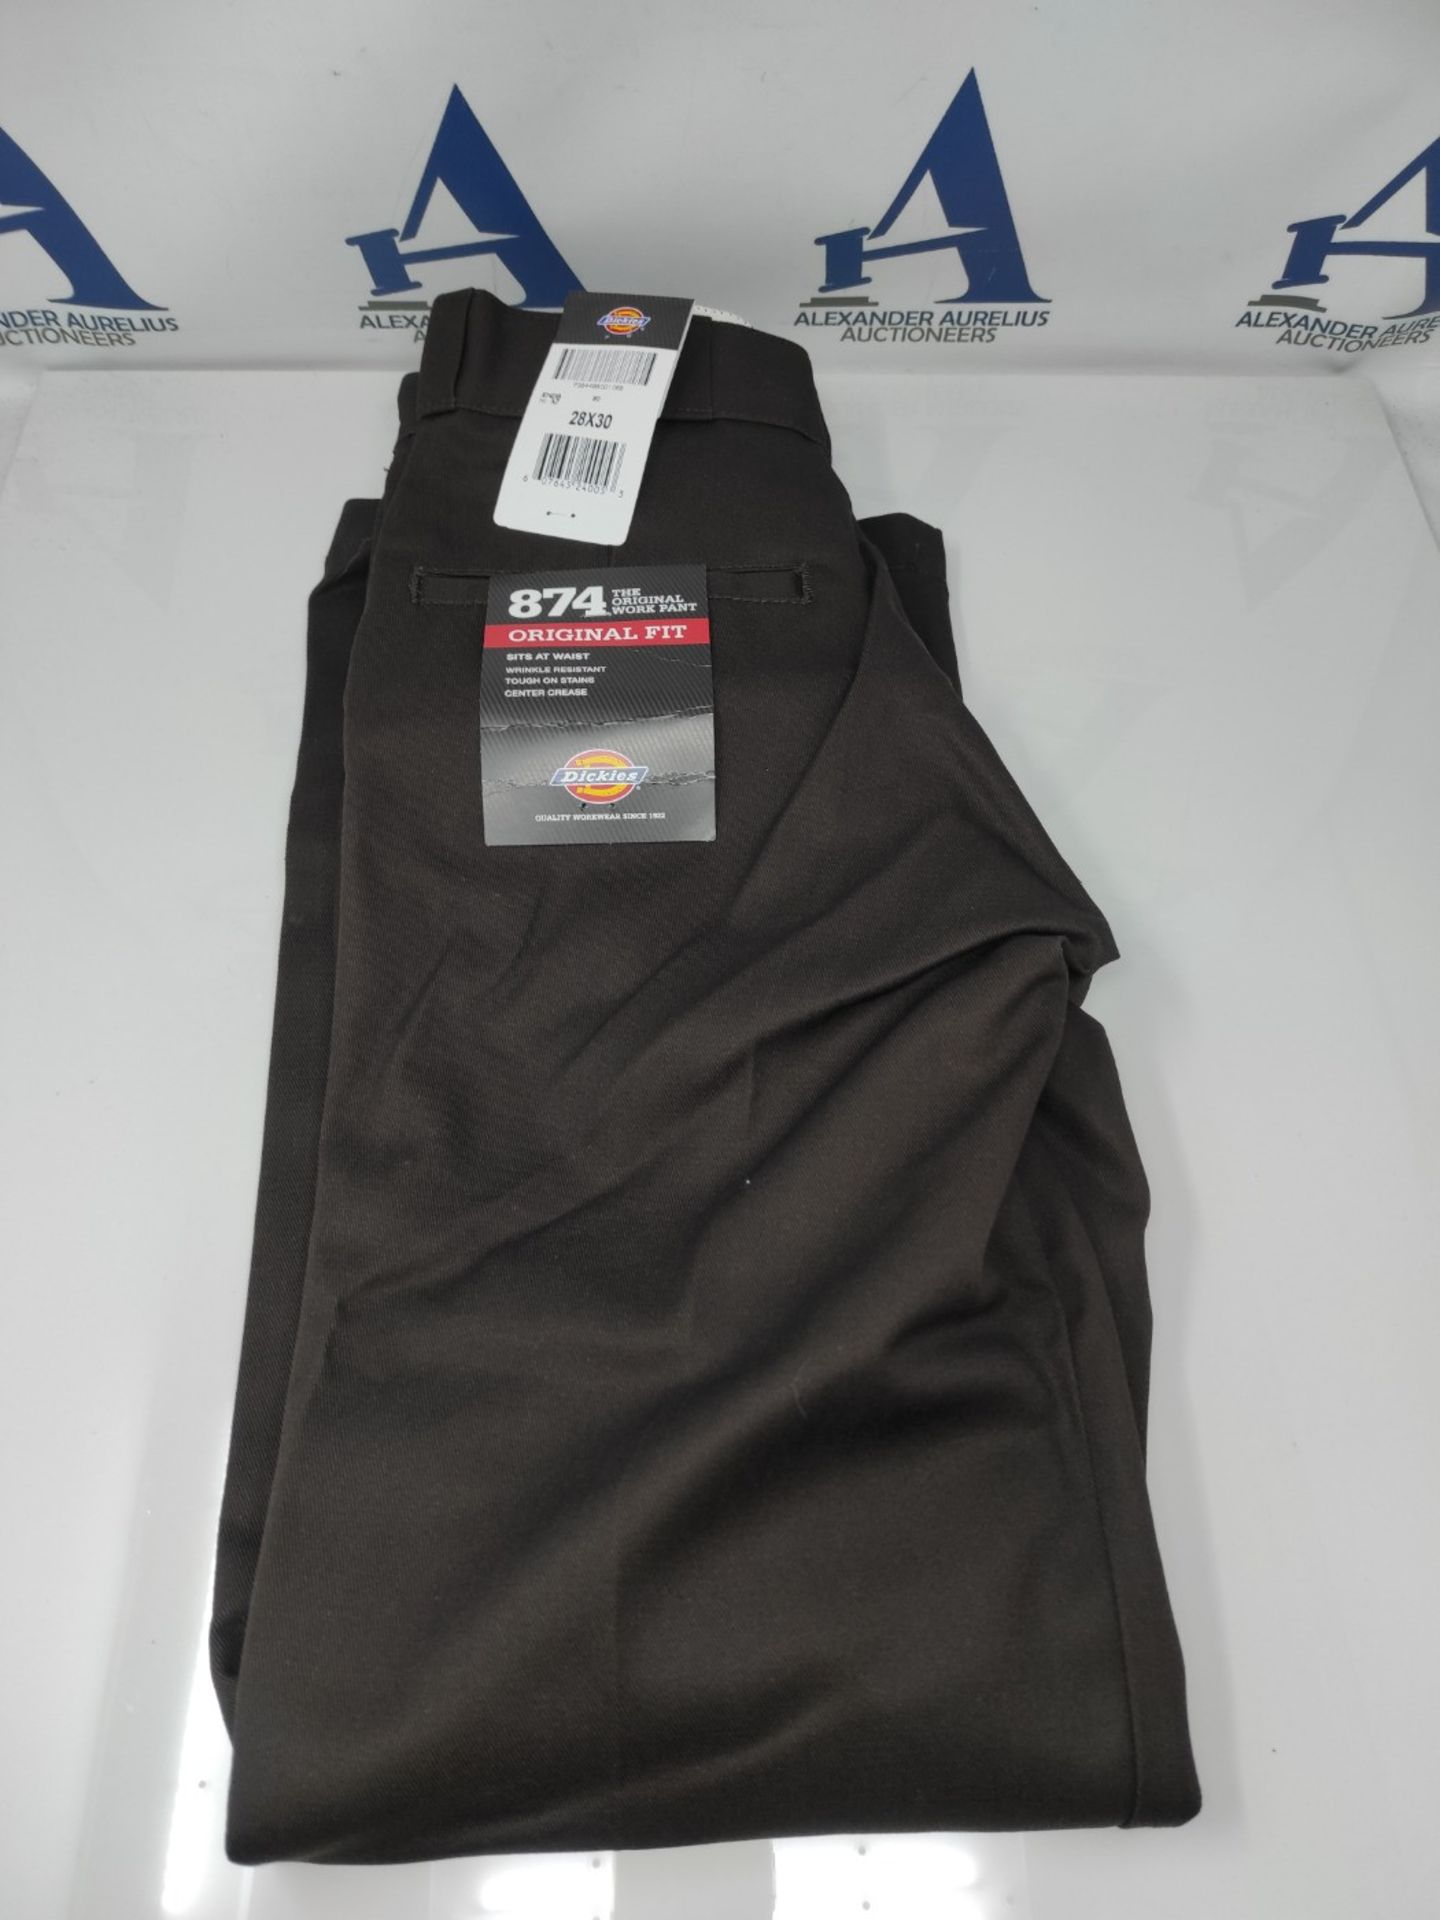 RRP £74.00 Dickies Men's Sportswear Male Pants Original Work, Brown (Dark Brown DB), 28W / 30L - Image 2 of 3